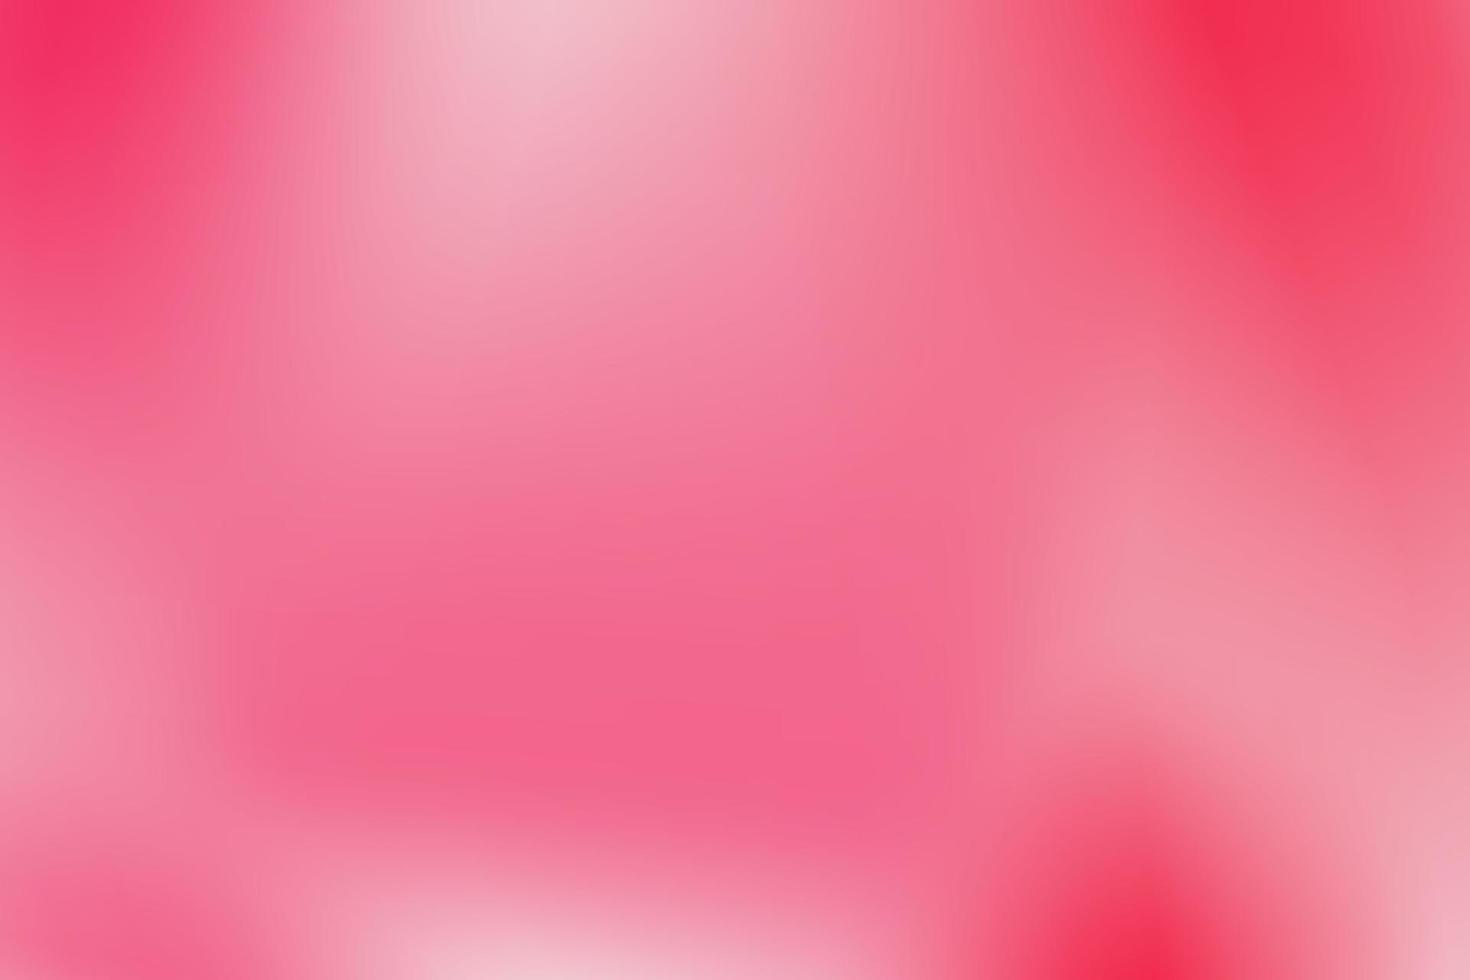 roze gradiëntachtergrond, met vage stijl, zachte gradatie, vectorbehang. vector